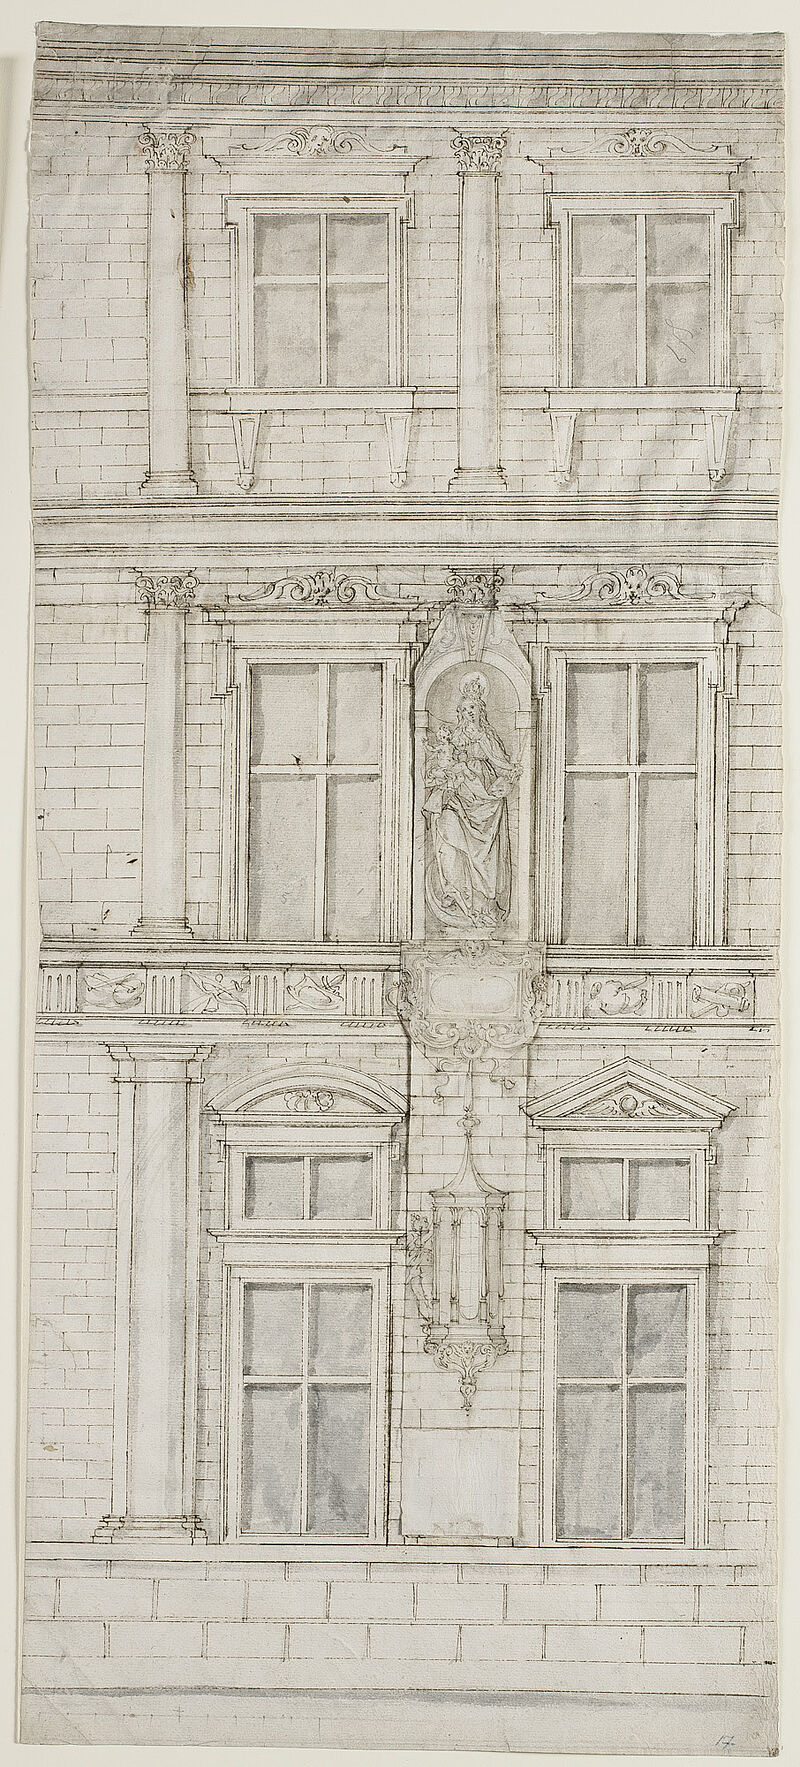 Hans Krumpper, Erster Entwurf für die Madonna an der Residenzfassade